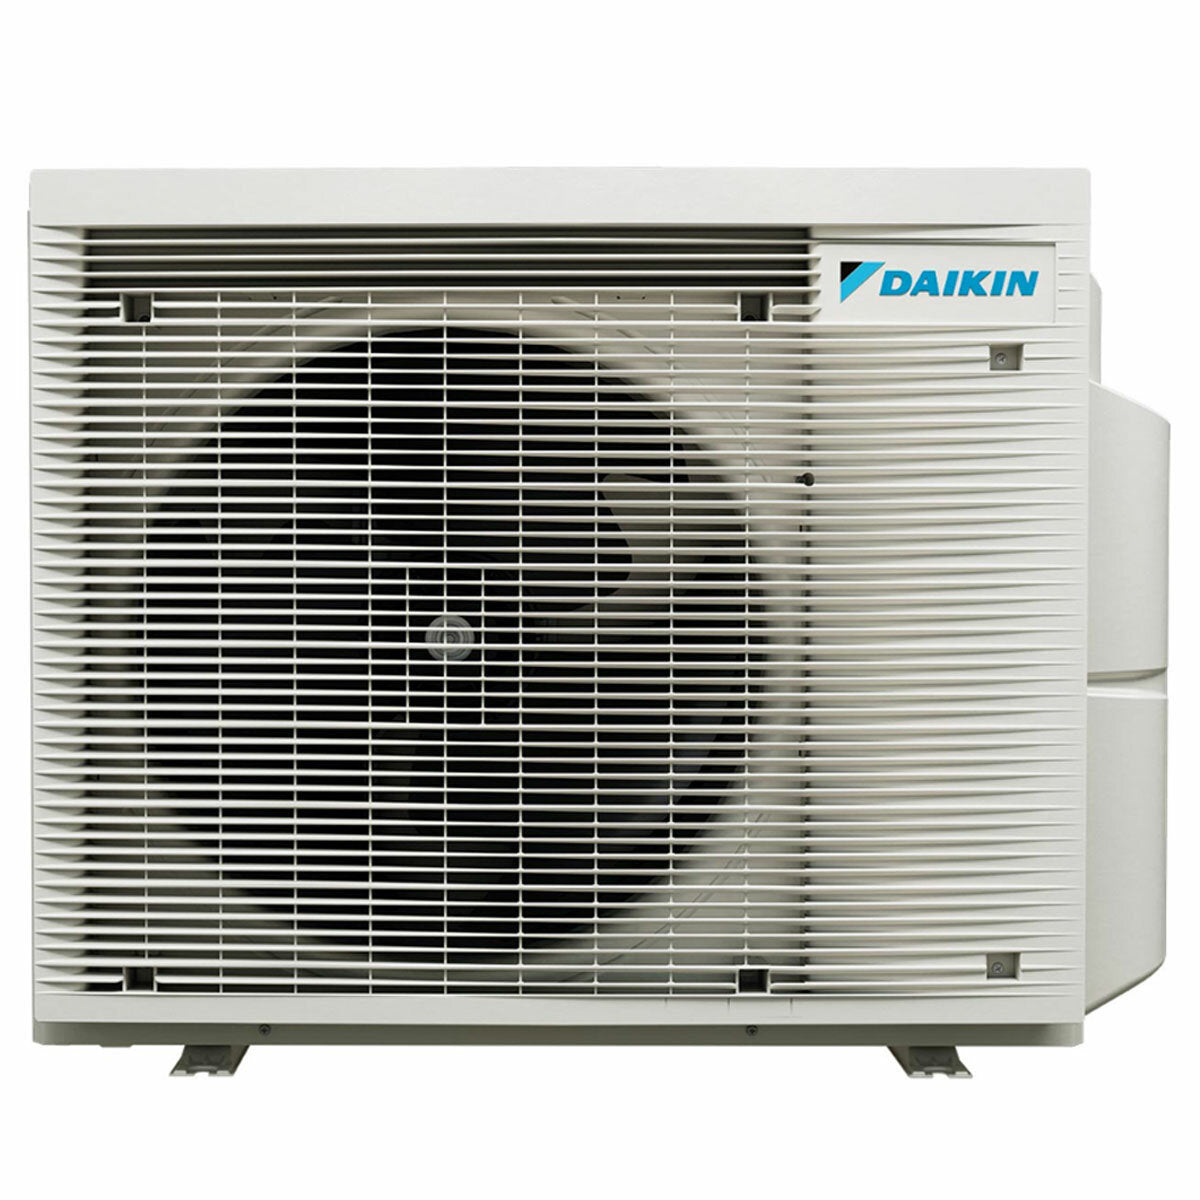 Daikin Emura 3 trial split air conditioner 12000+12000+18000 BTU inverter A+ wifi outdoor unit 7.4 kW Silver